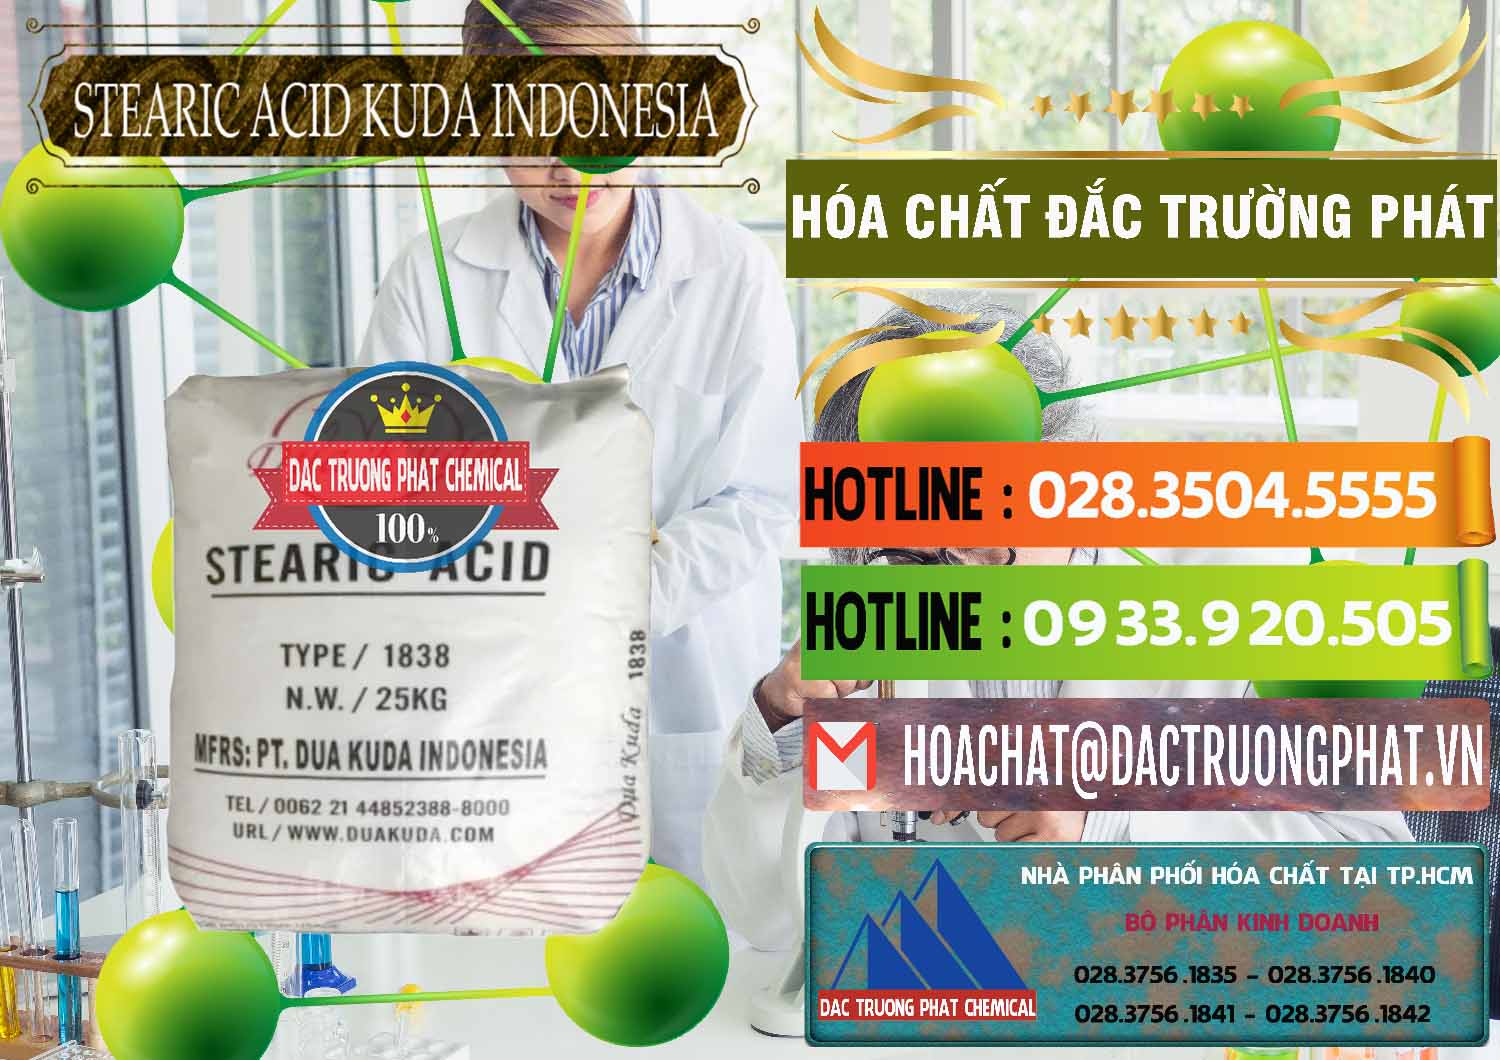 Bán & phân phối Axit Stearic - Stearic Acid Dua Kuda Indonesia - 0388 - Nơi phân phối _ nhập khẩu hóa chất tại TP.HCM - cungcaphoachat.com.vn